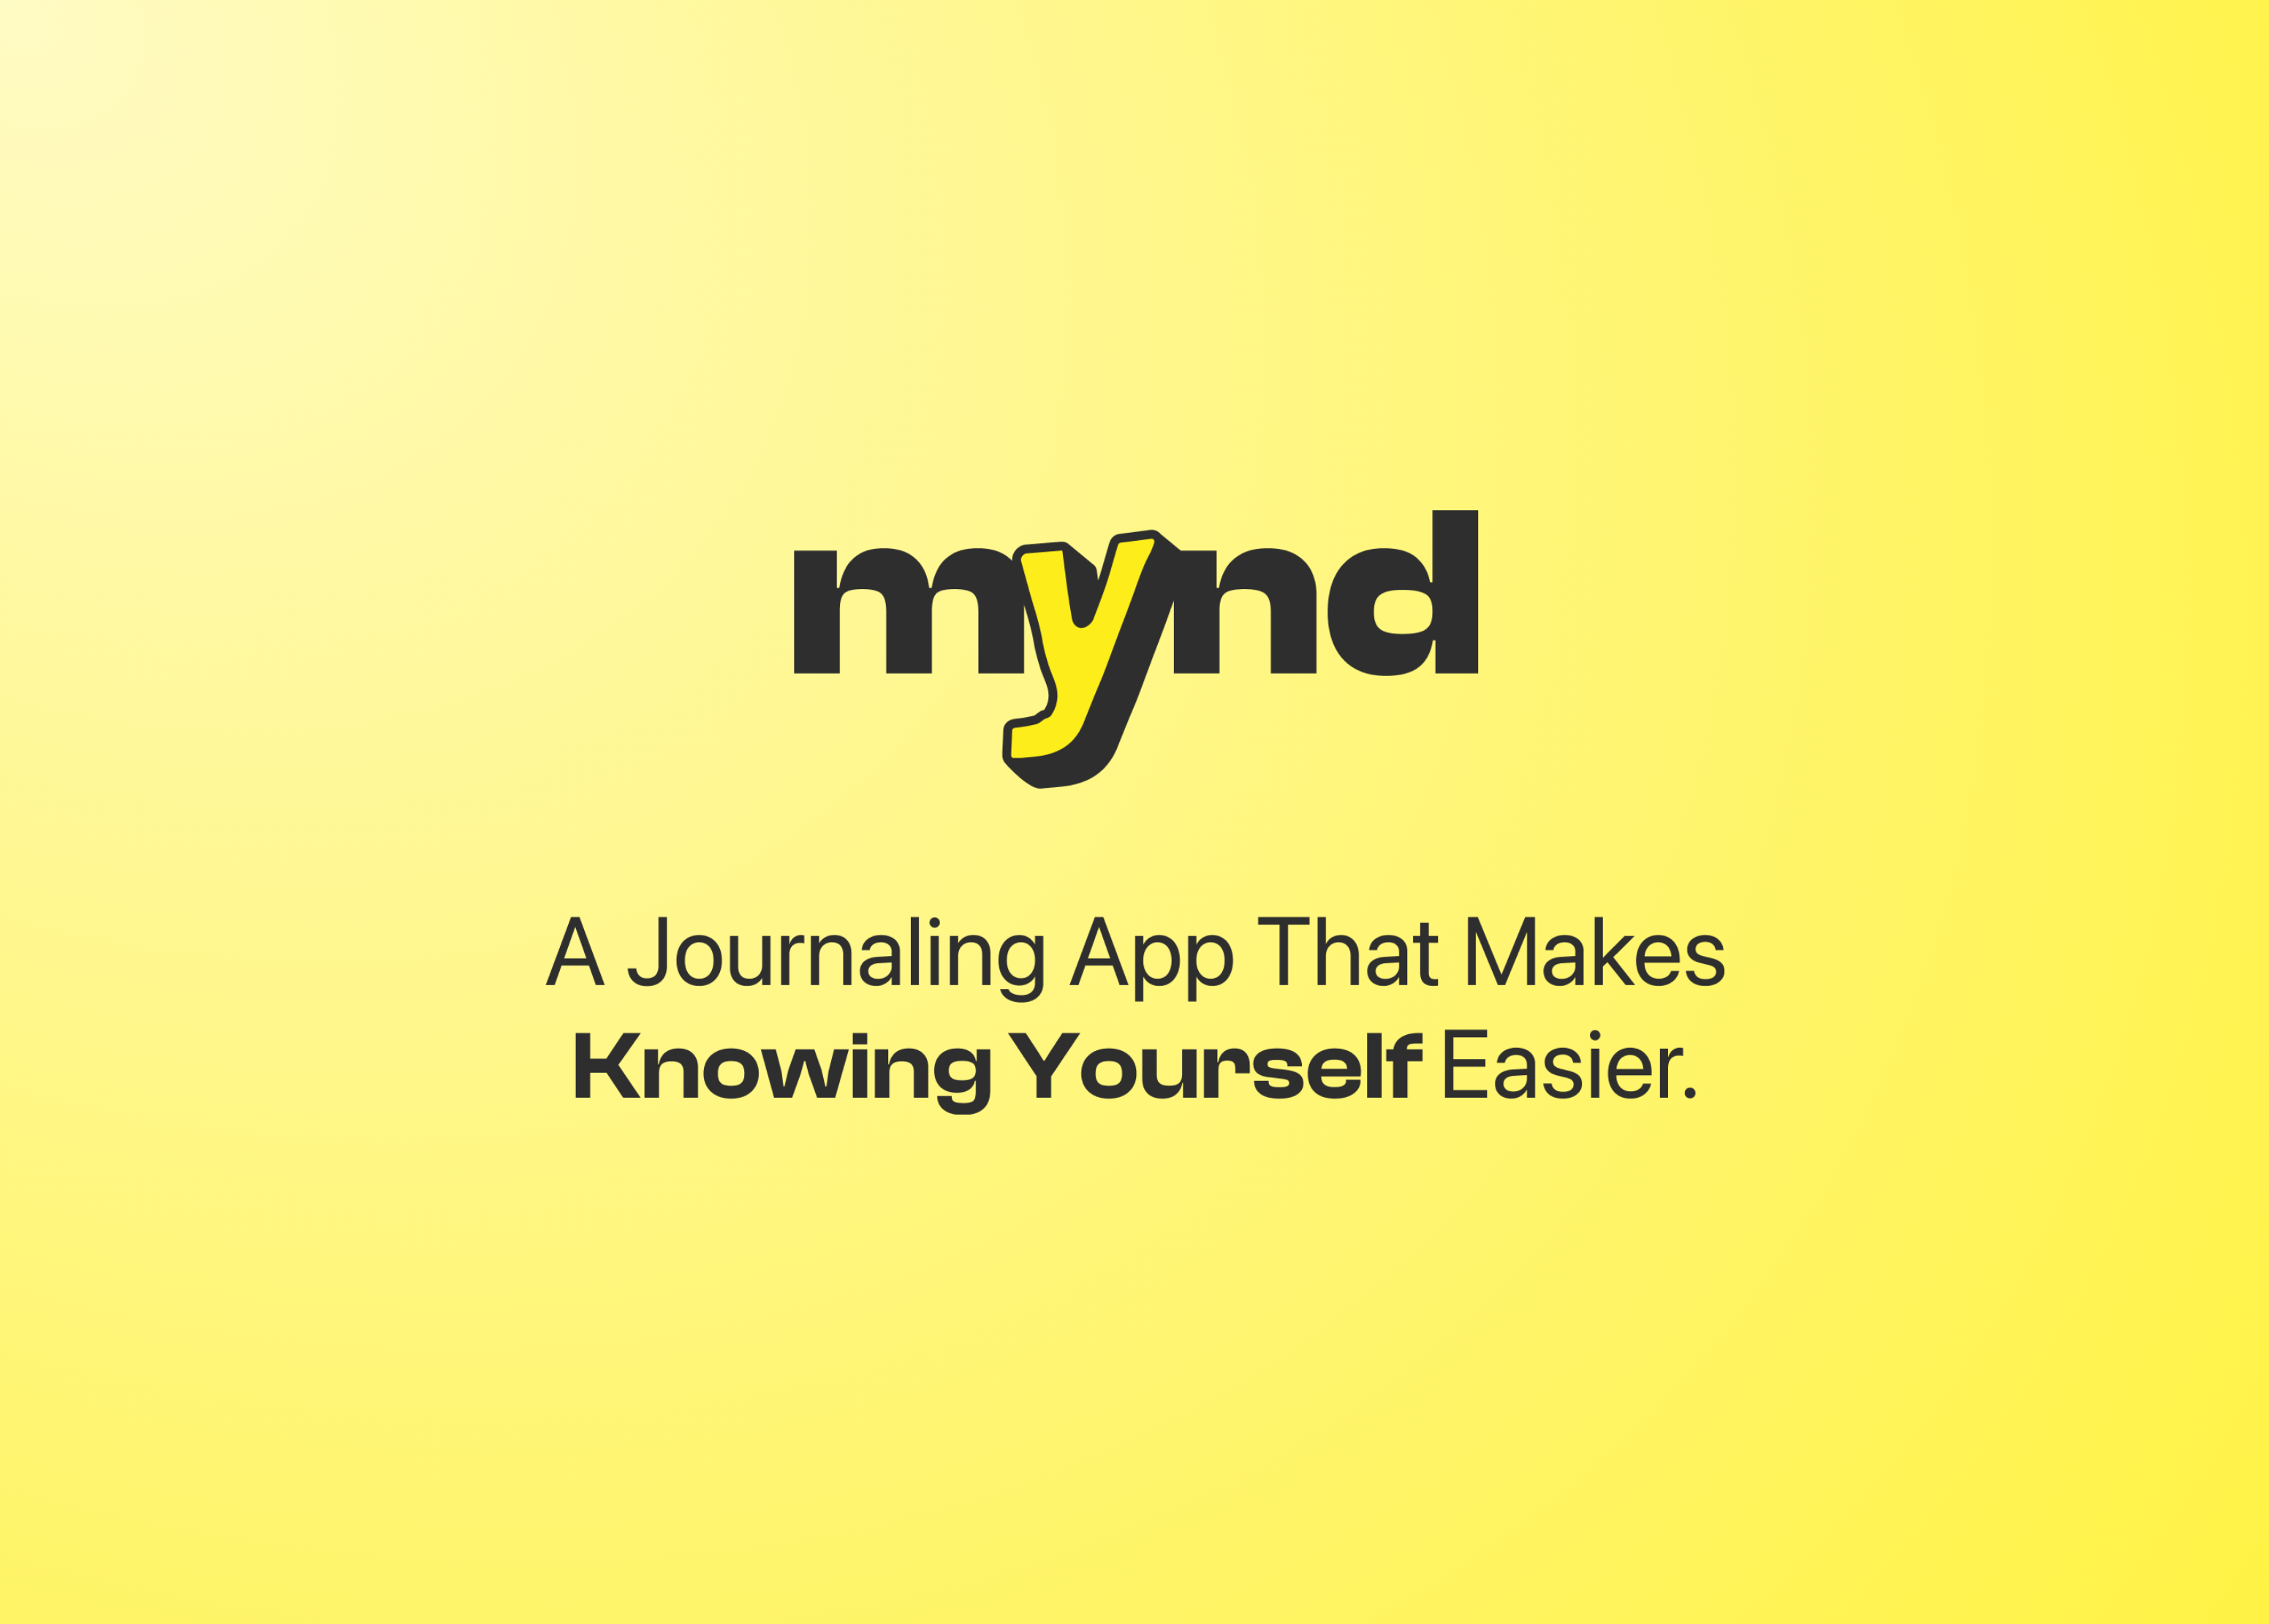 mynd-ジャーナリングと自分自身へのより大きな洞察を得るためのツール